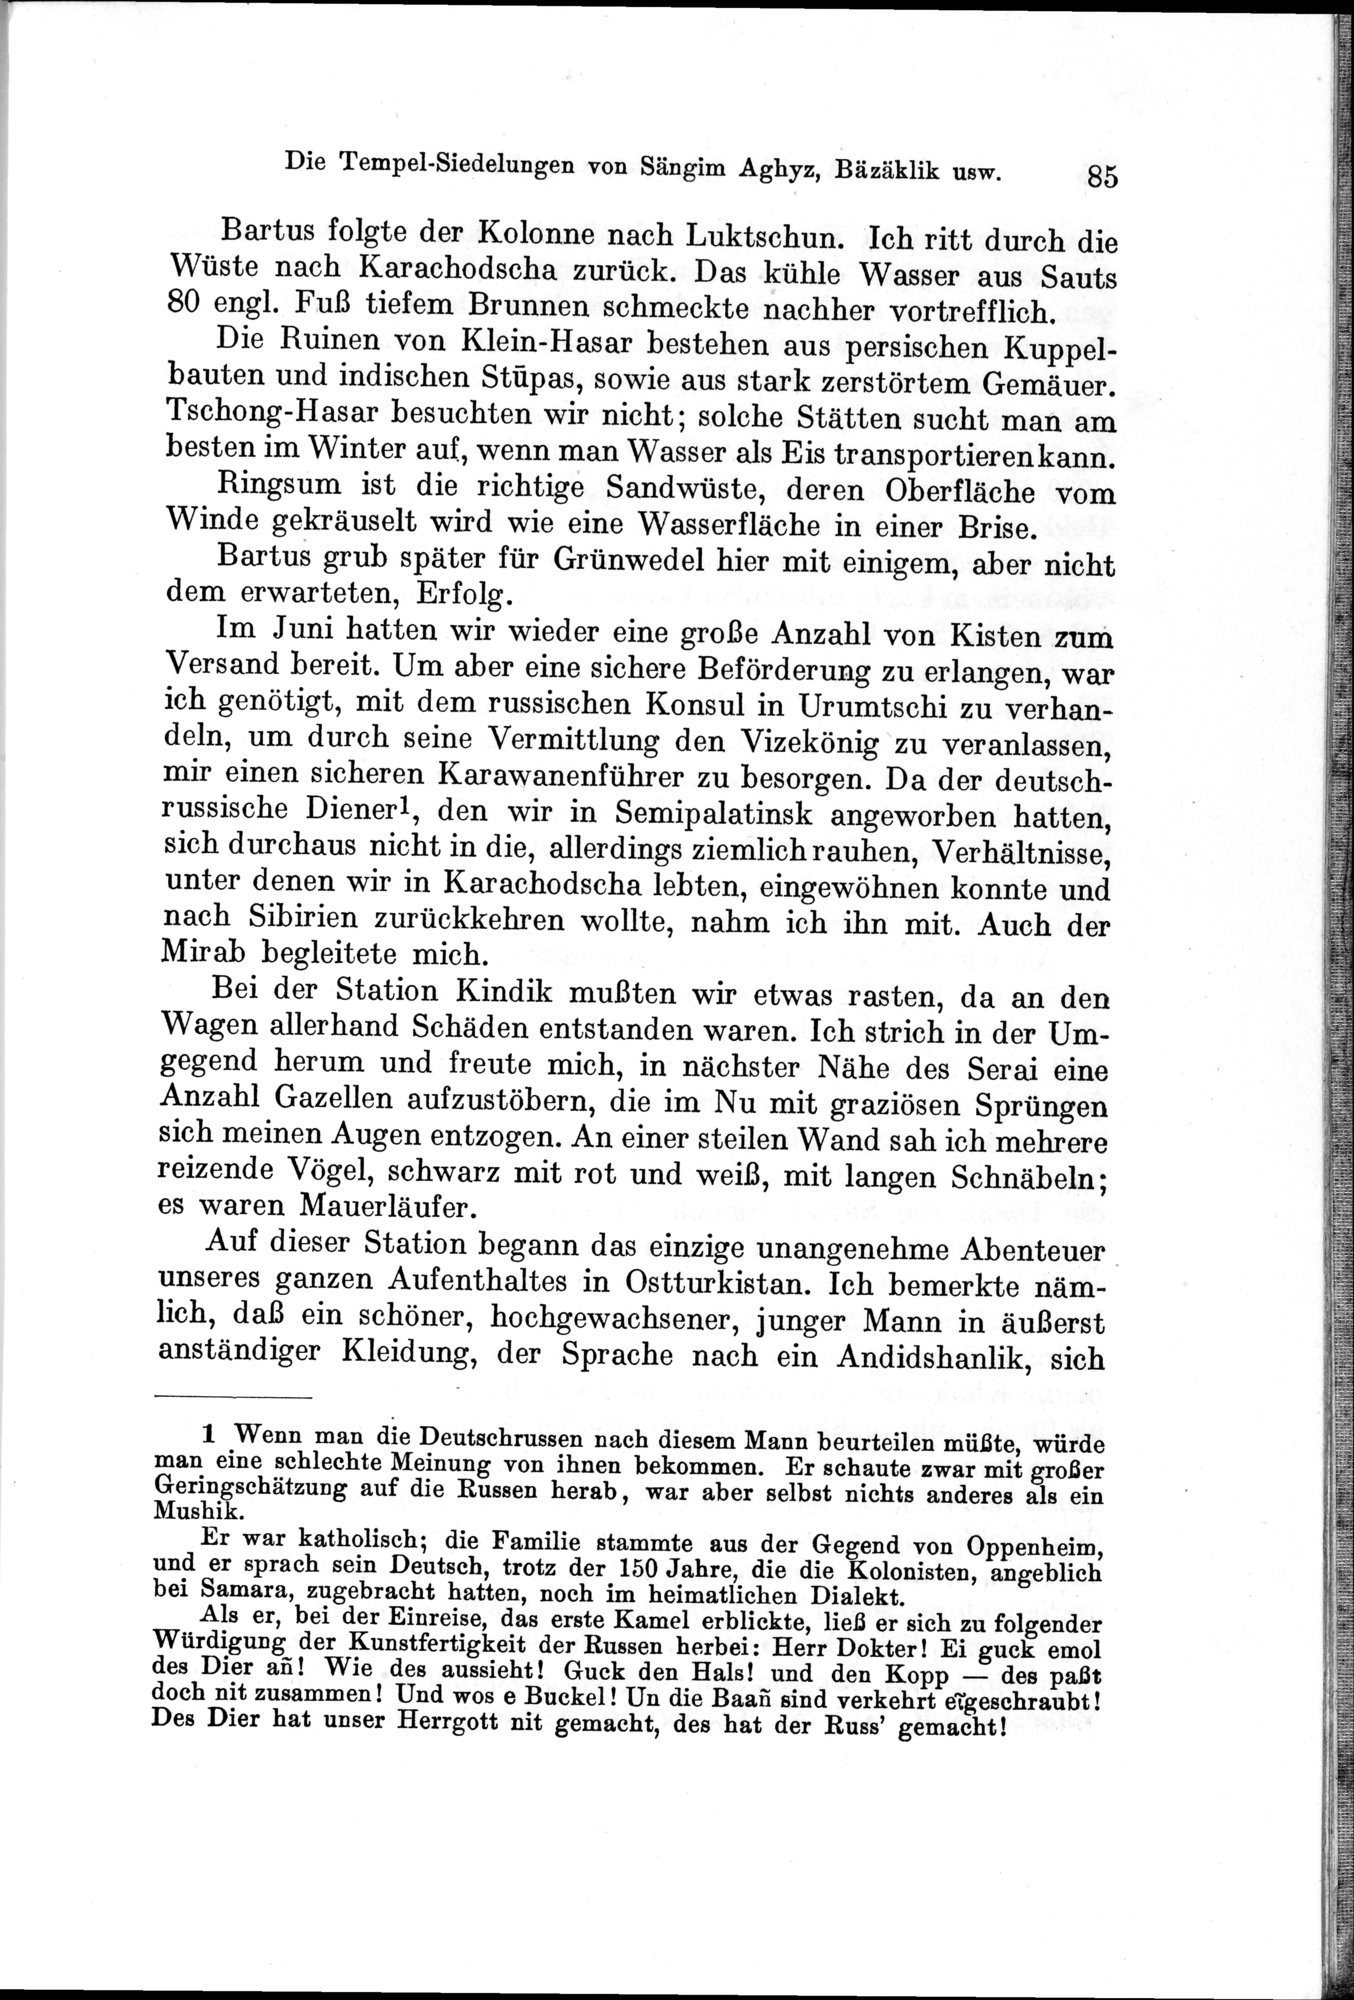 Auf Hellas Spuren in Ostturkistan : vol.1 / Page 125 (Grayscale High Resolution Image)